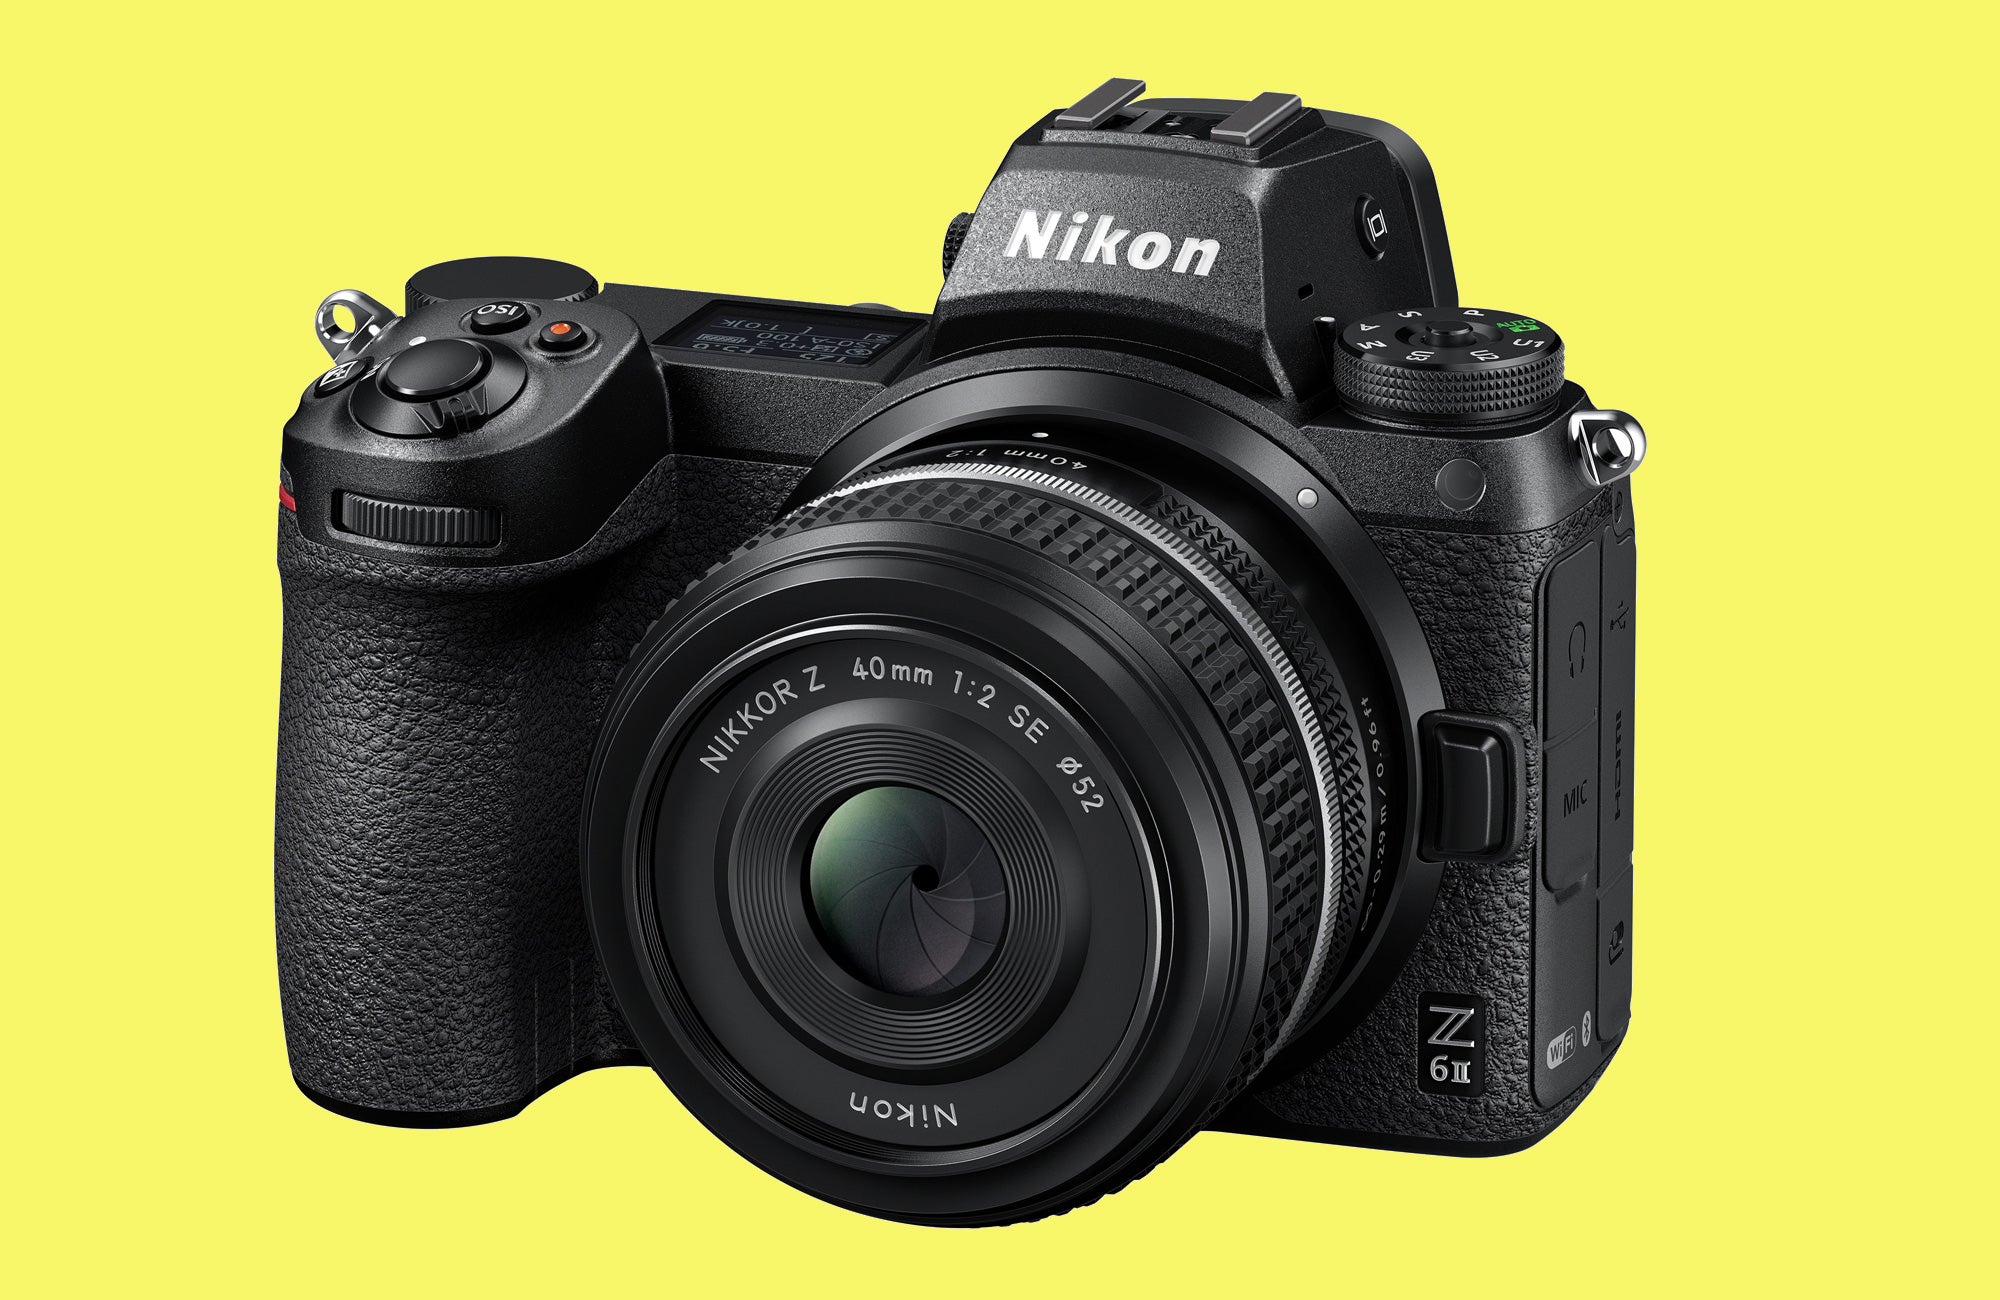 Nikon 40mm f/2 SE lens on a Z6 II camera